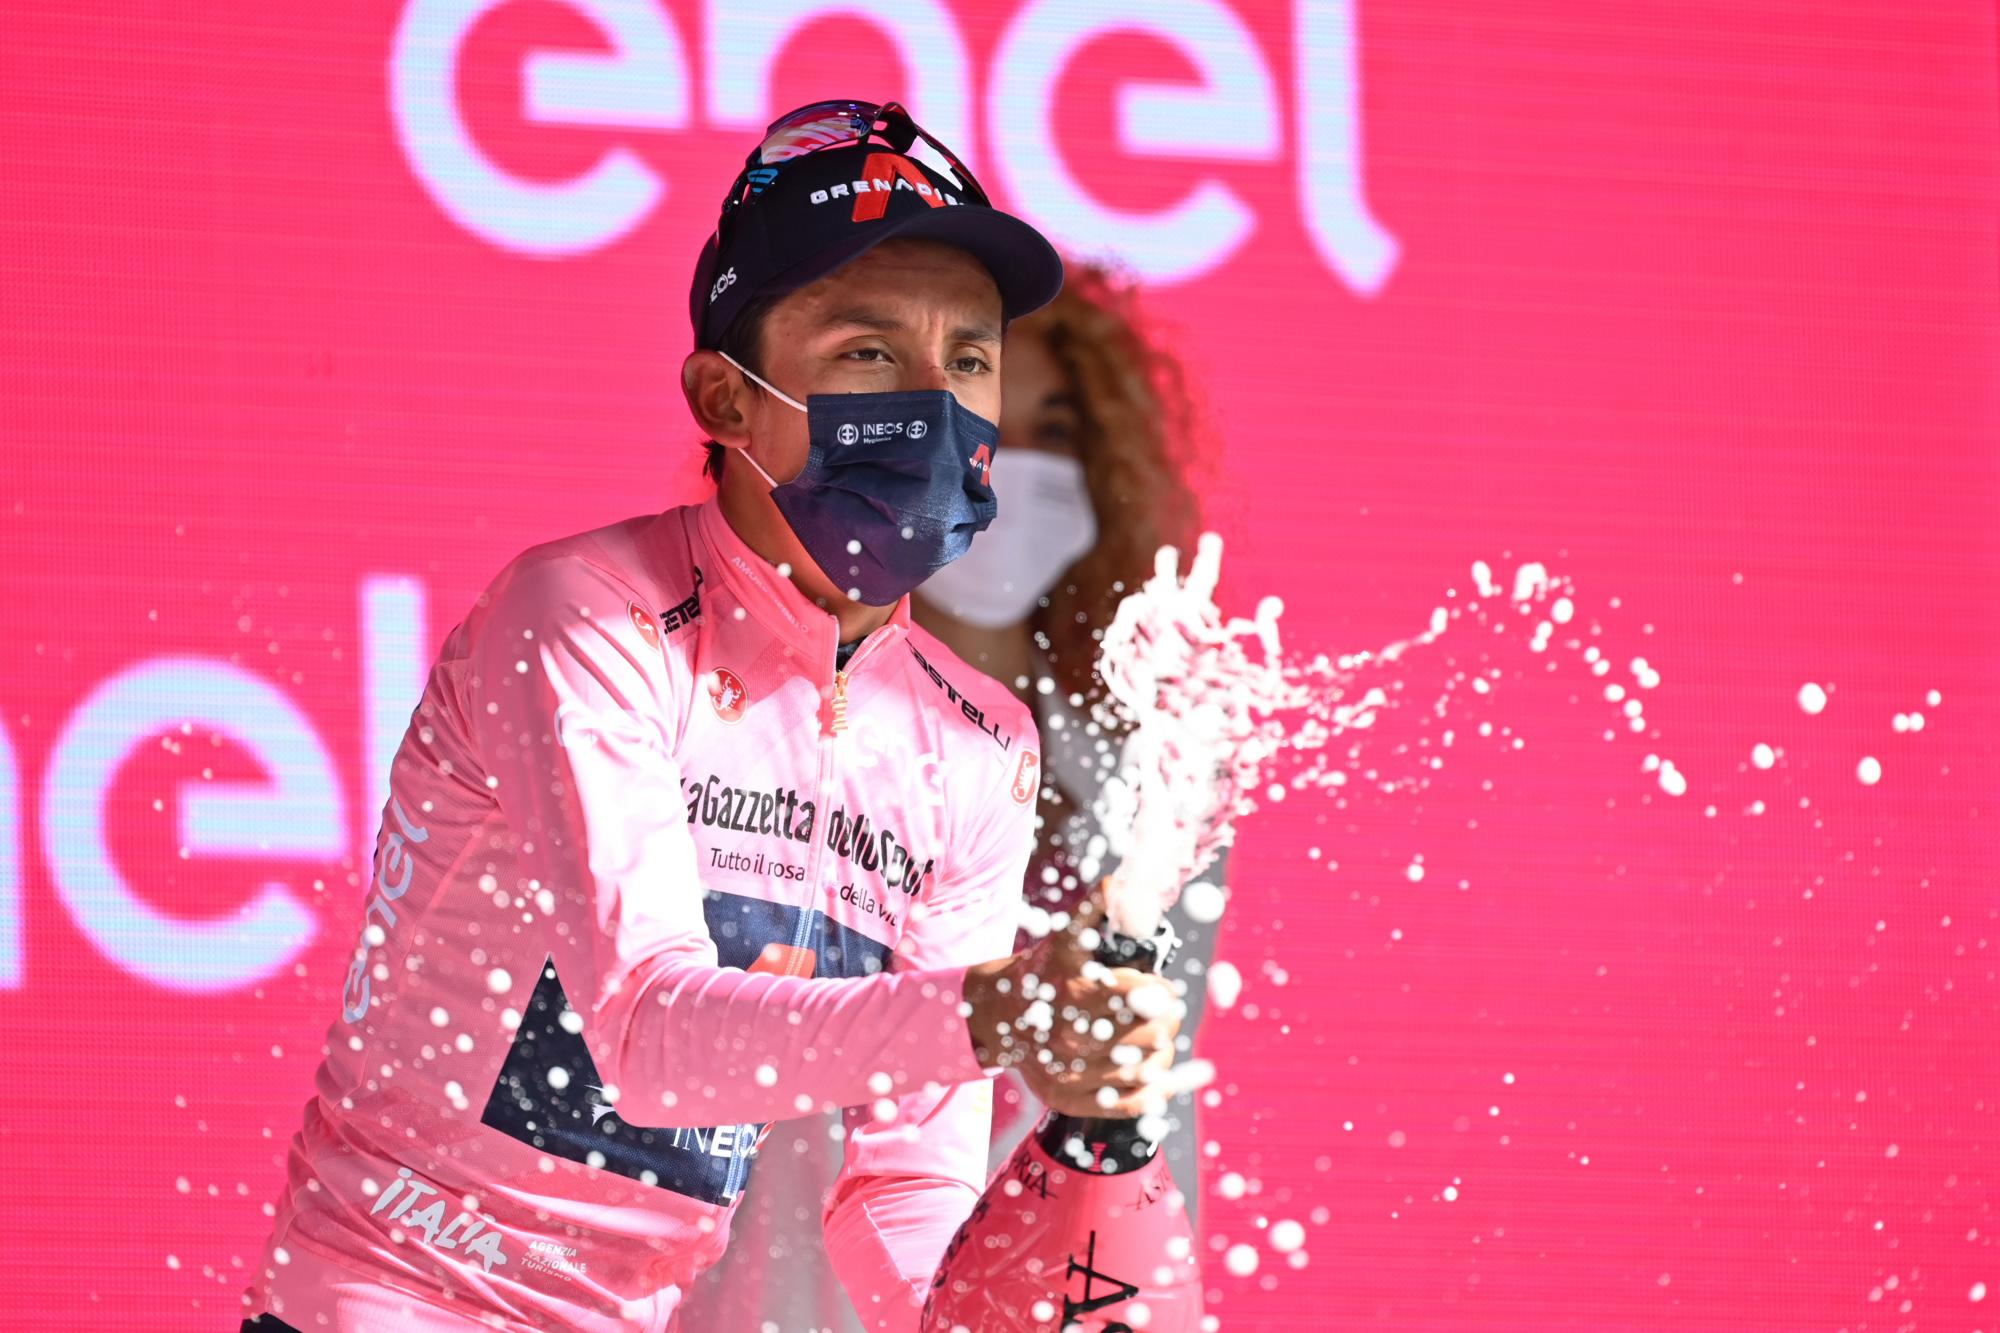 El líder general Egan Bernal celebra tras completar la 11ma etapa del Giro de Italia, el miércoles 19 de mayo de 2021, en Montalcino. (Massimo Paolone/LaPresse vía AP)